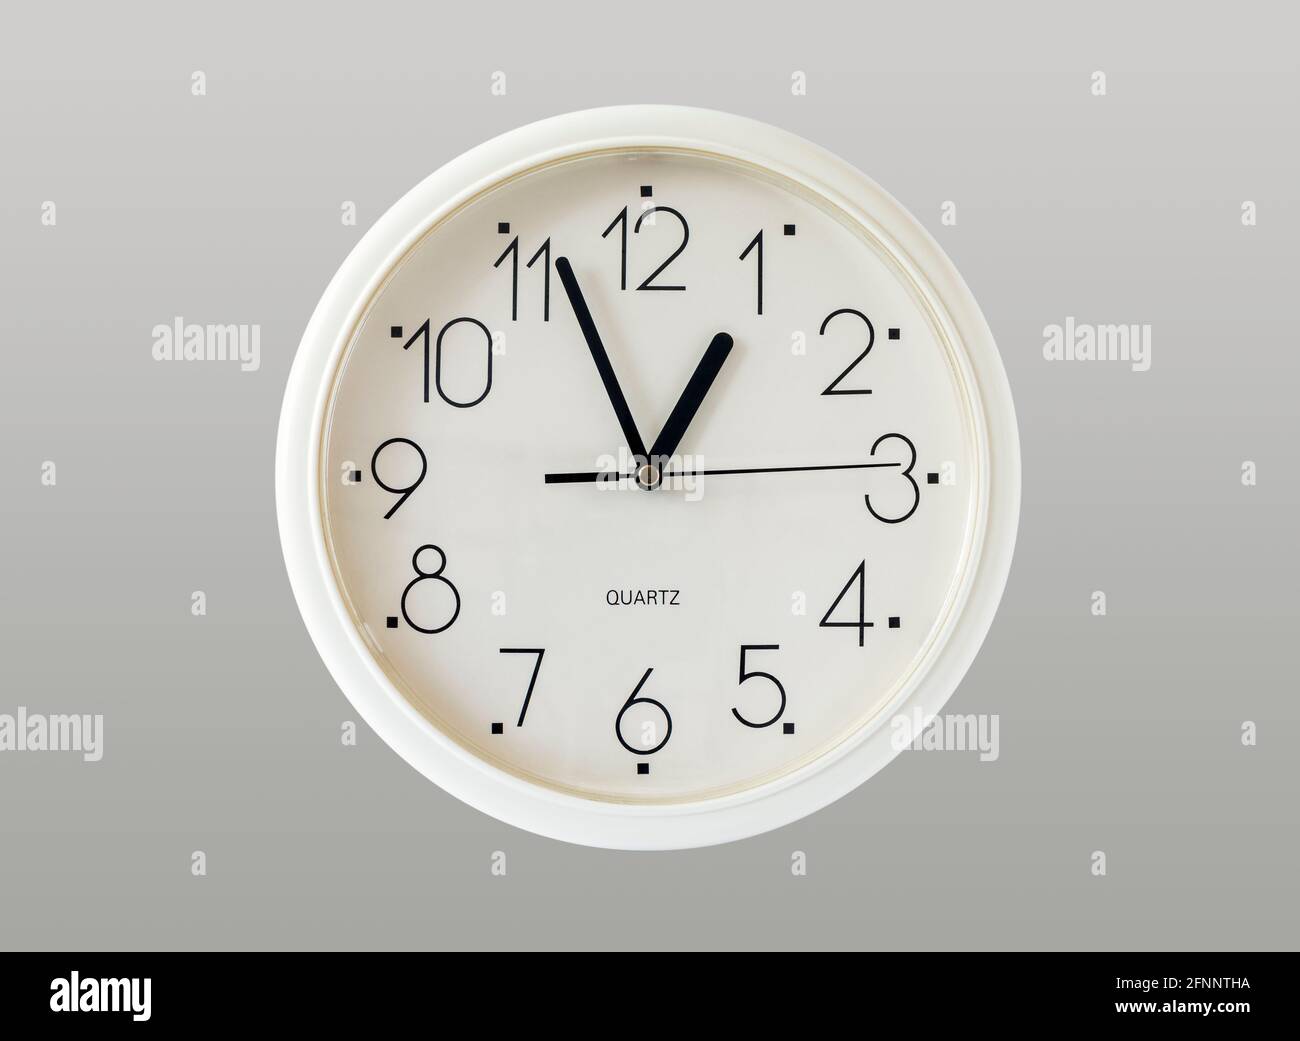 Horloge murale en plastique blanc générique à action quartz isolée sur fond  gris Photo Stock - Alamy